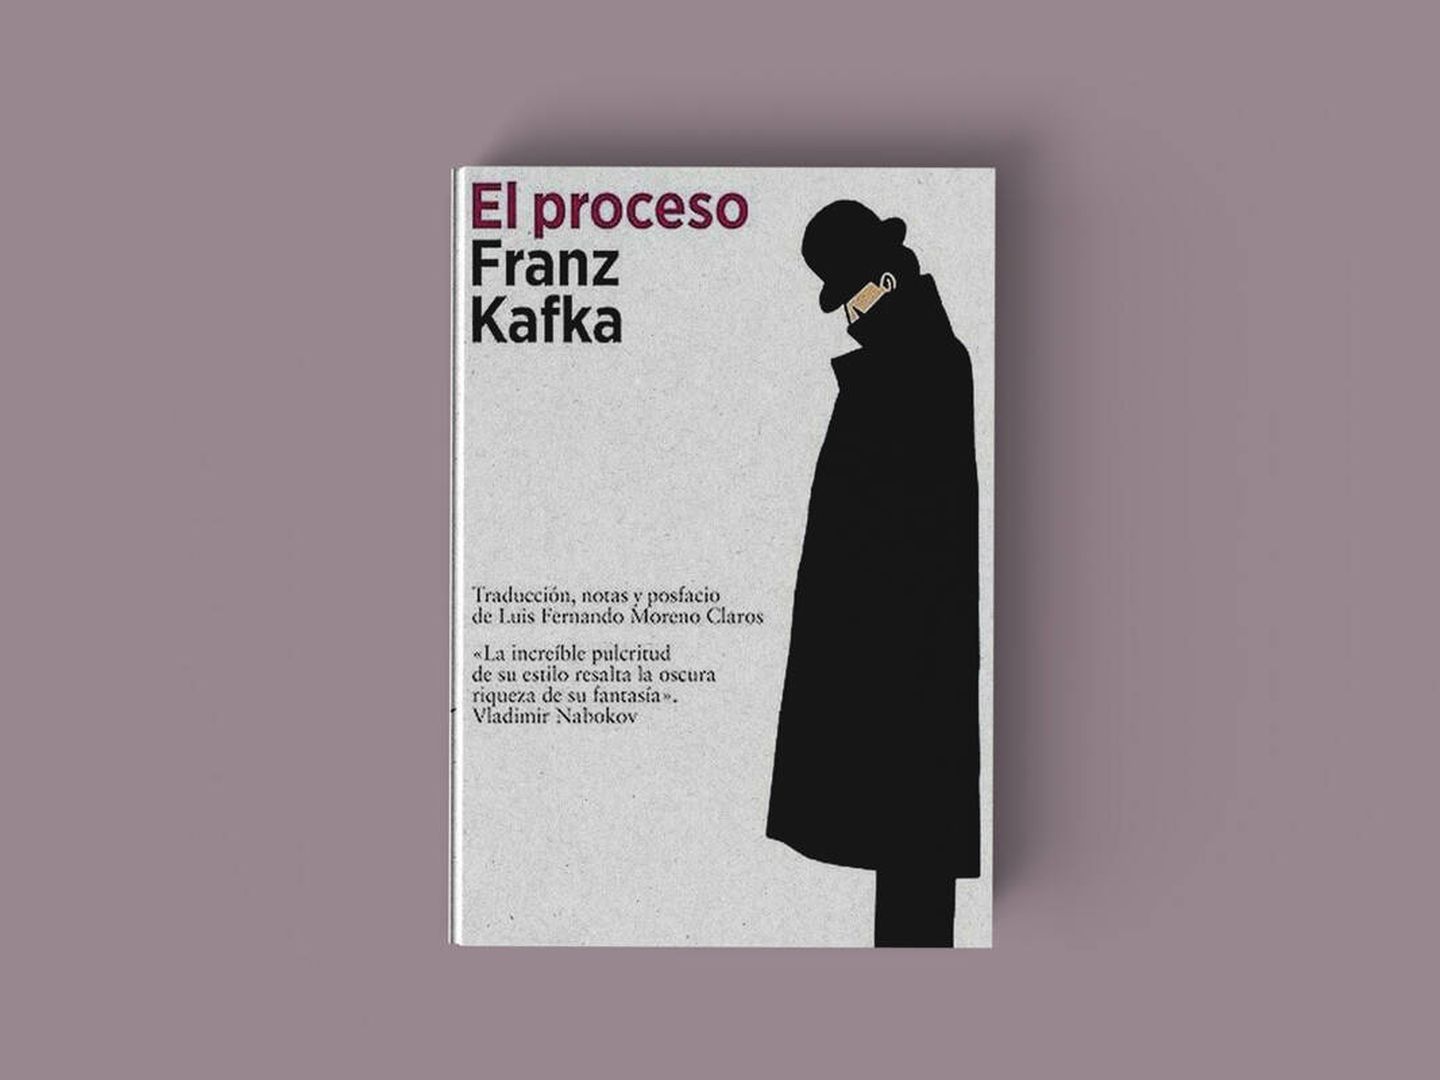 Portada de la edición de 'El proceso' de Franz Kafka traducida por Luis Fernando Moreno Claros.